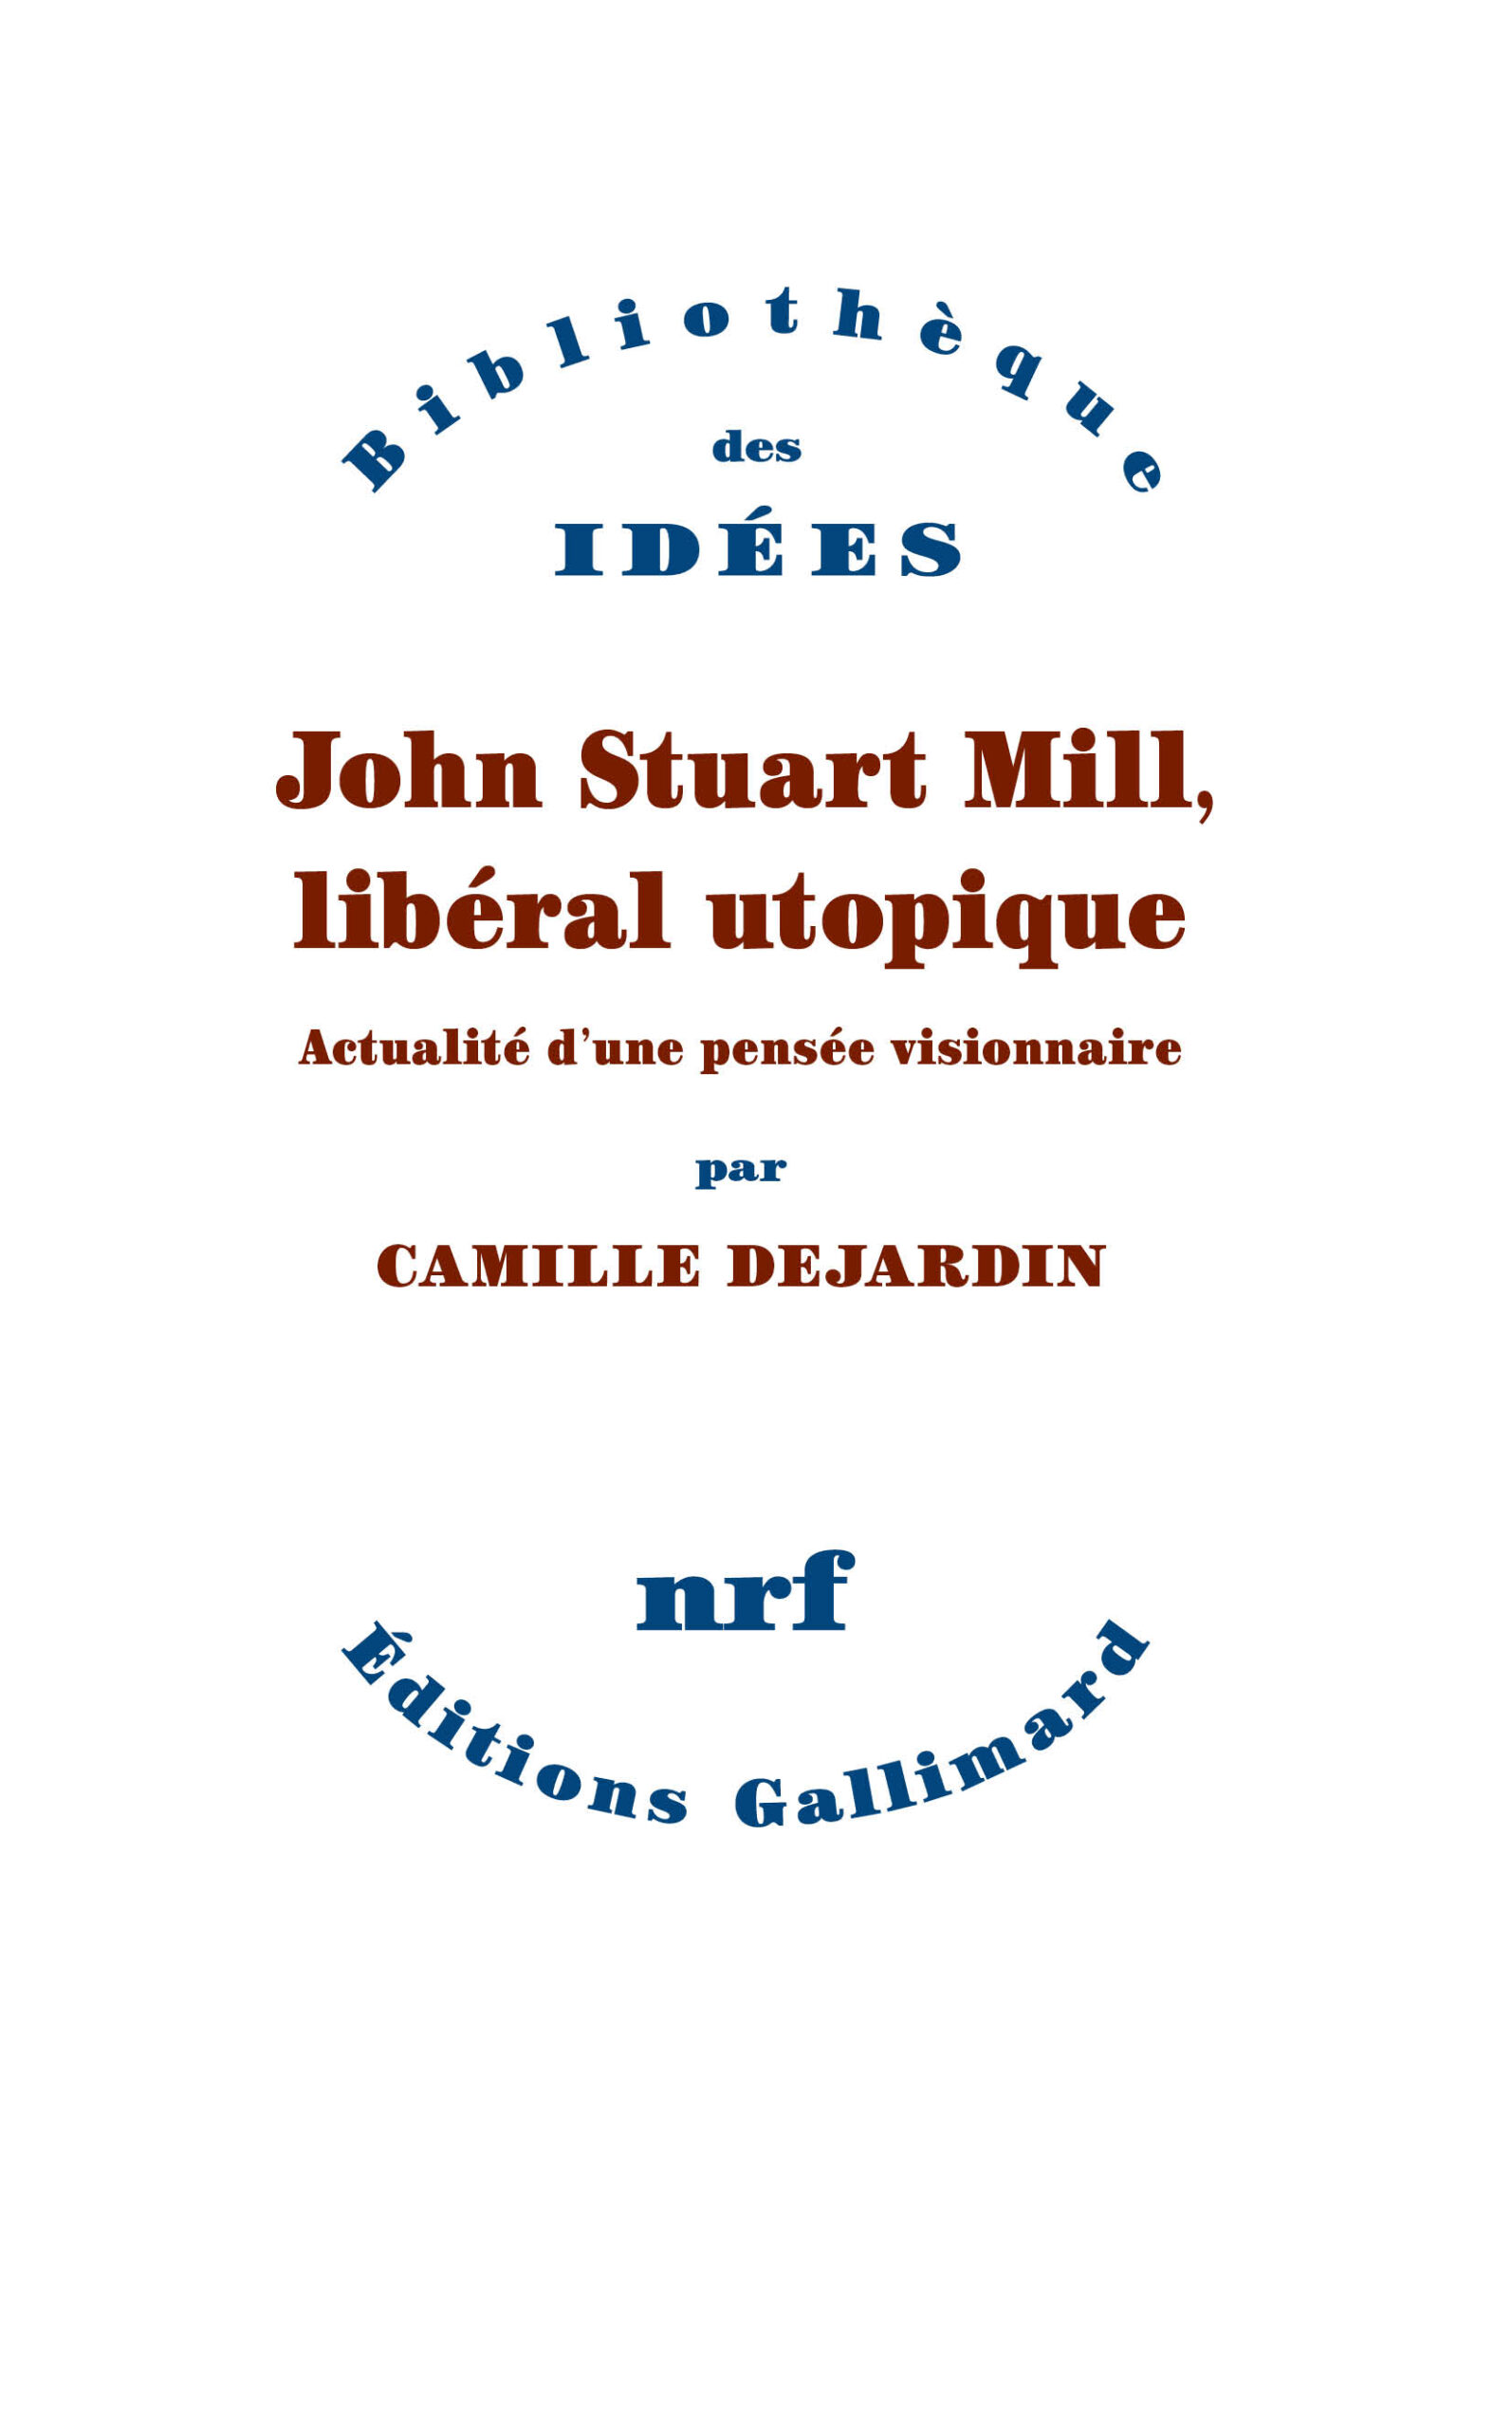 Image John Stuart Mill, libéral utopique : actualité d'une pensée visionnaire